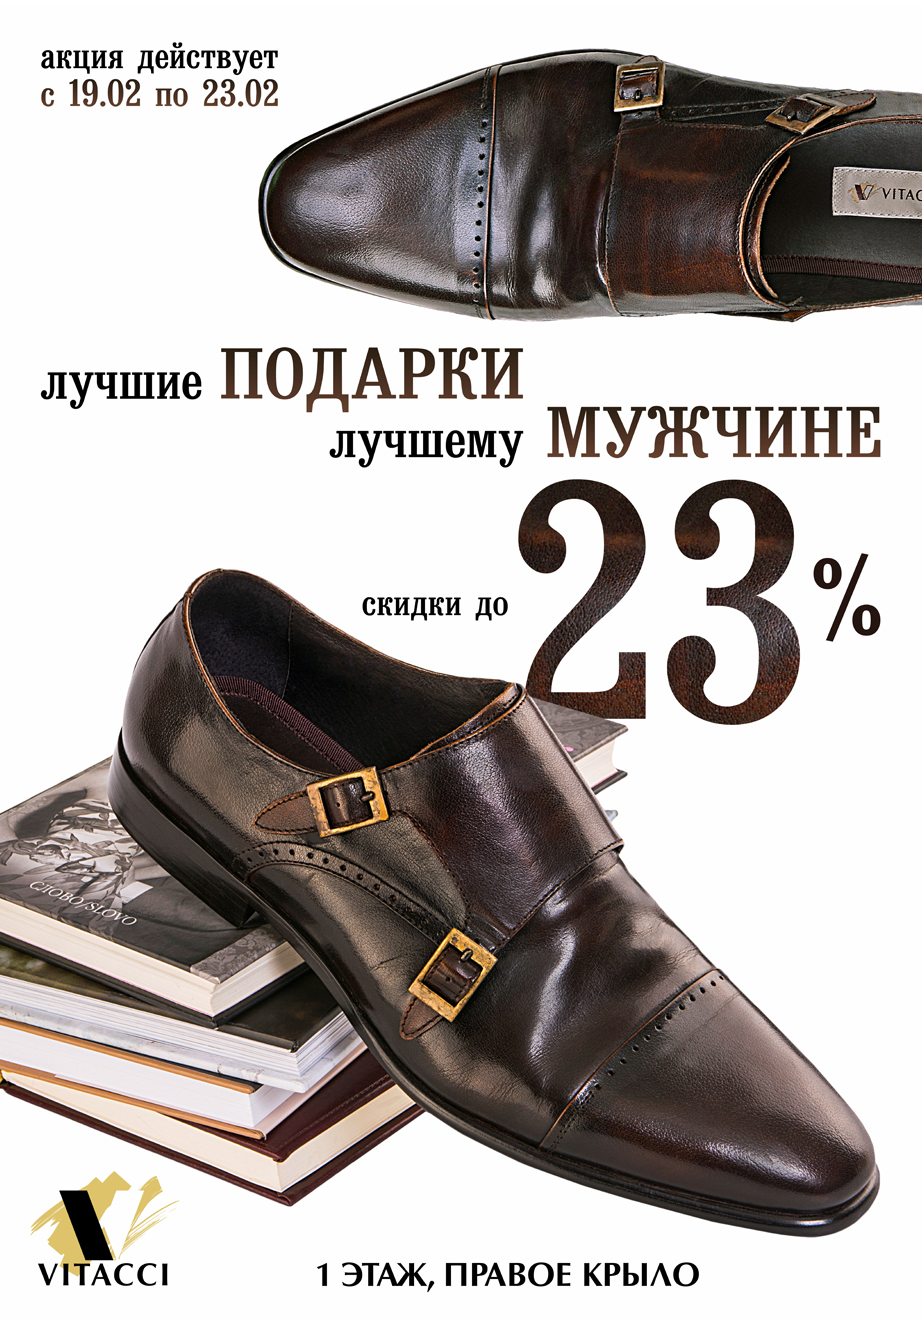 С 19 по 23 февраля скидки до 23% в магазине модной обуви Vitacci.